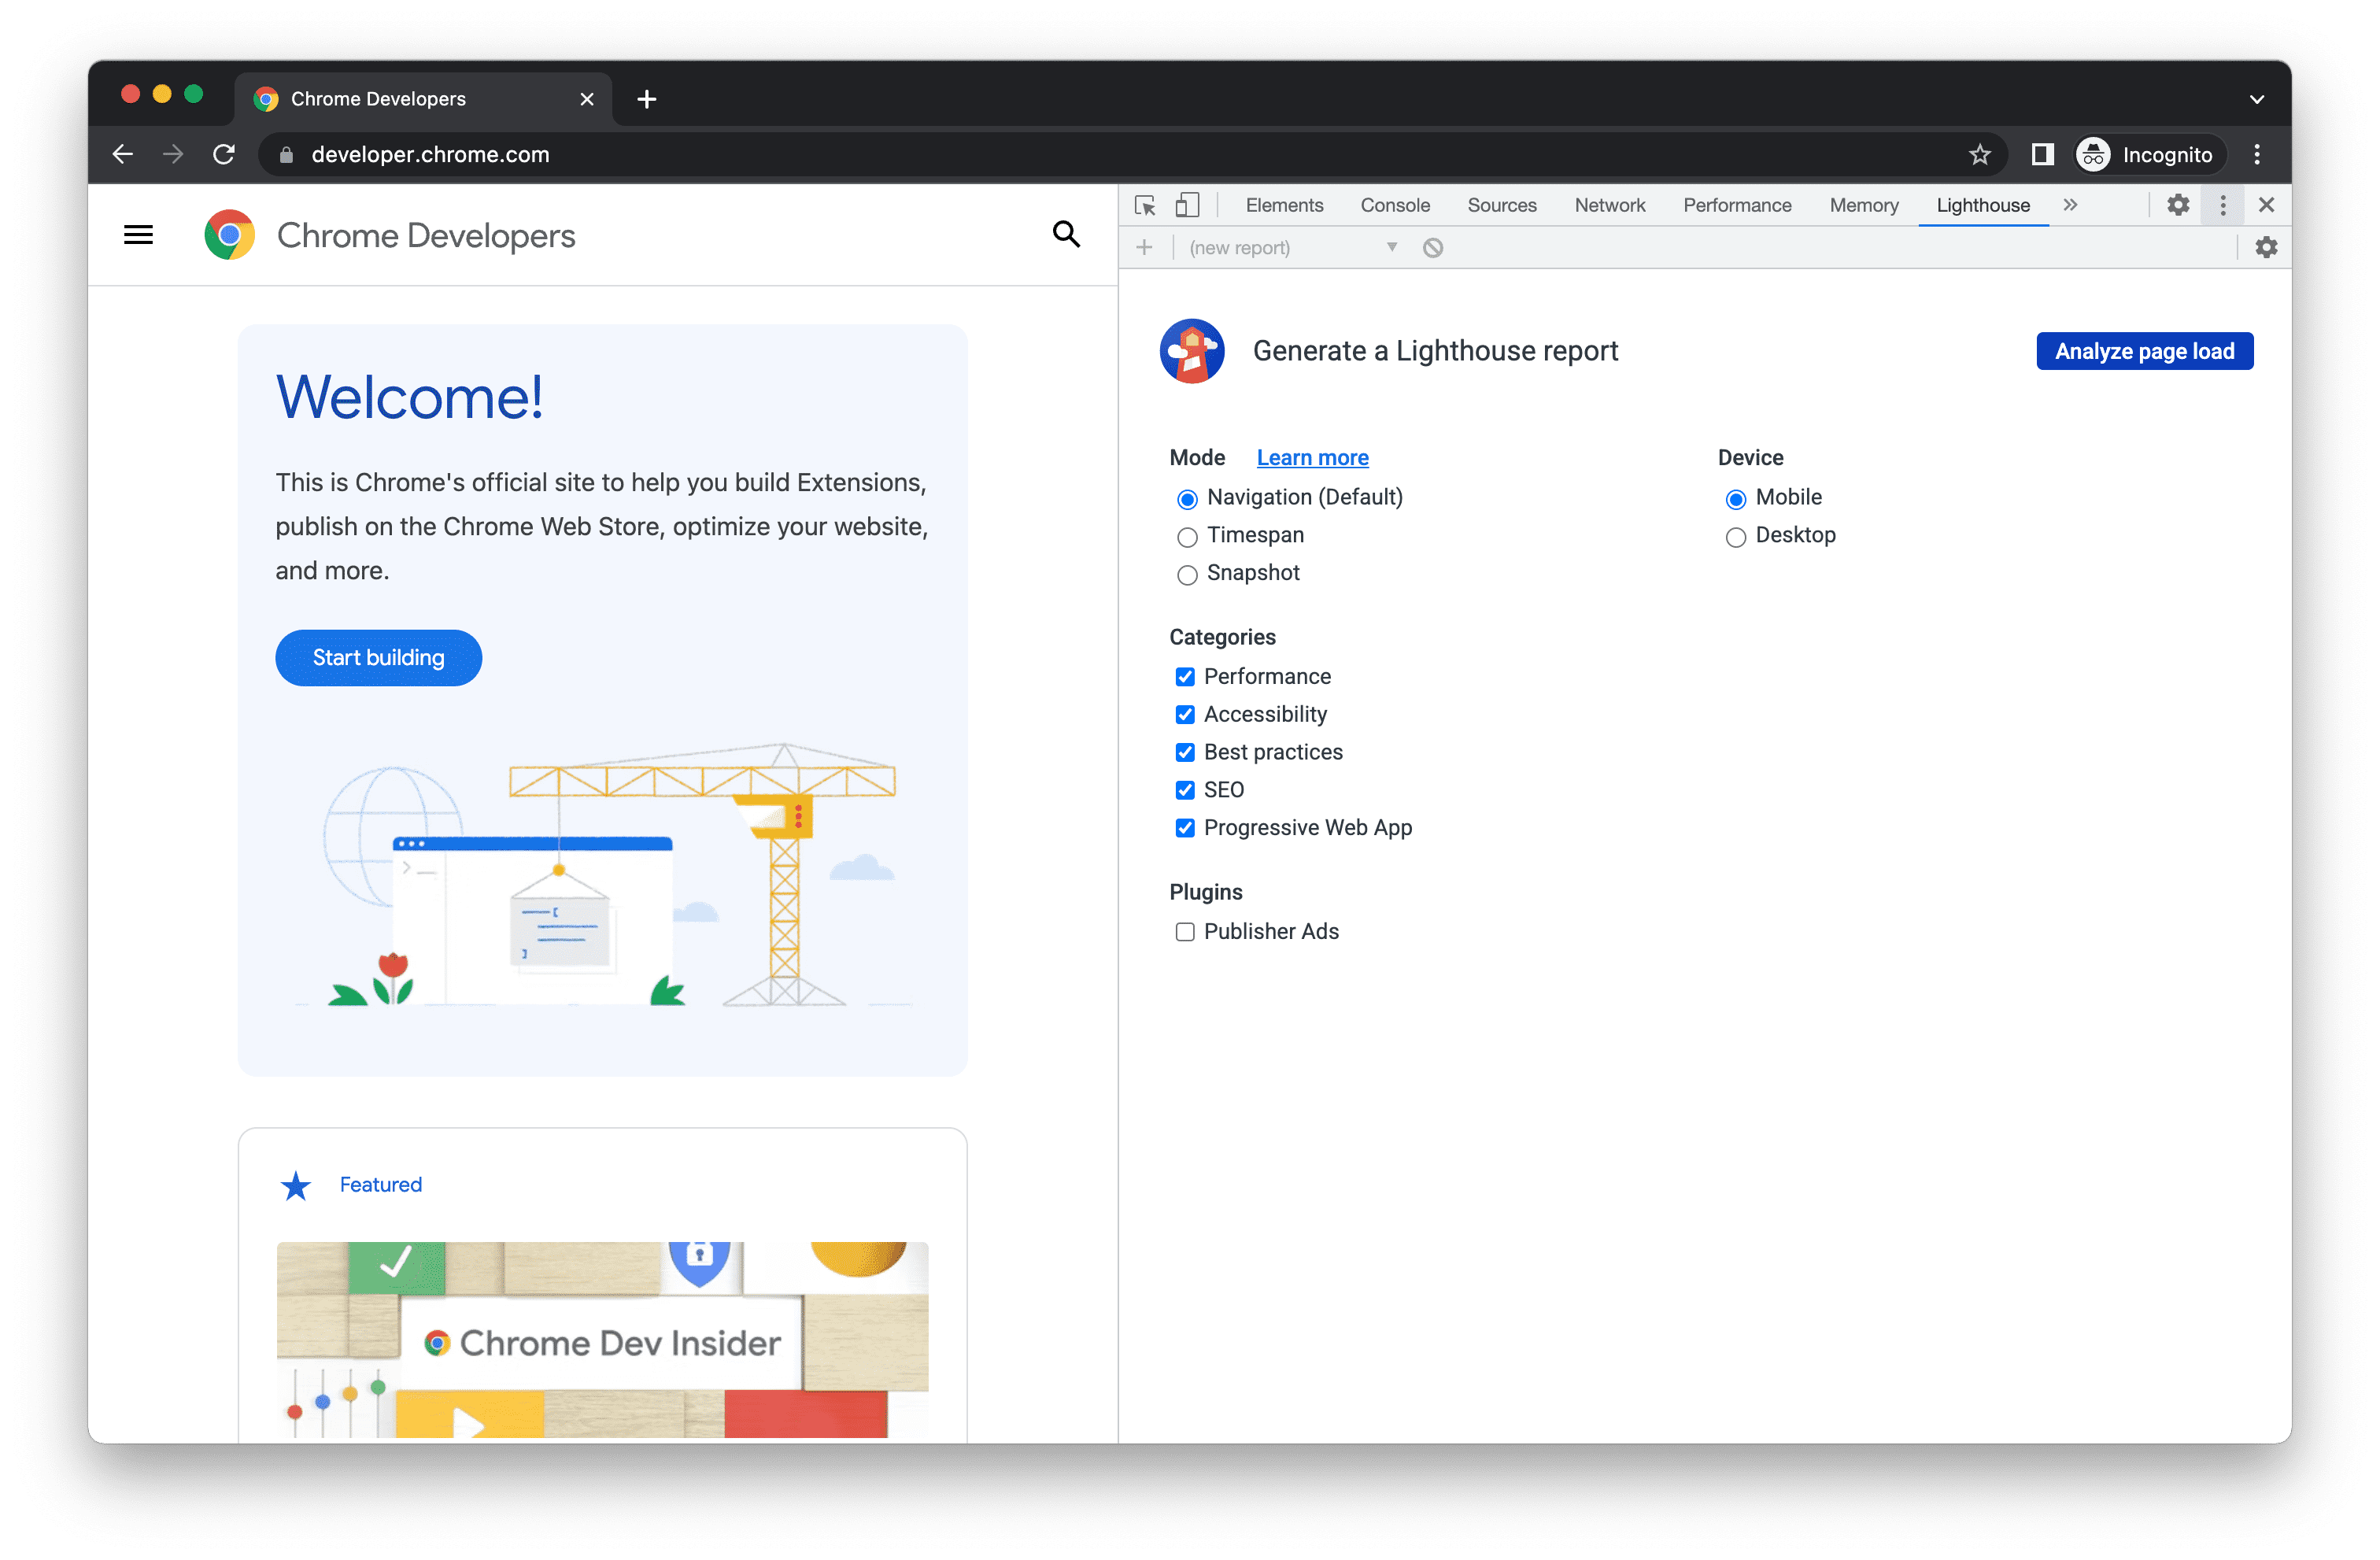 Het Lighthouse-paneel van Chrome DevTools